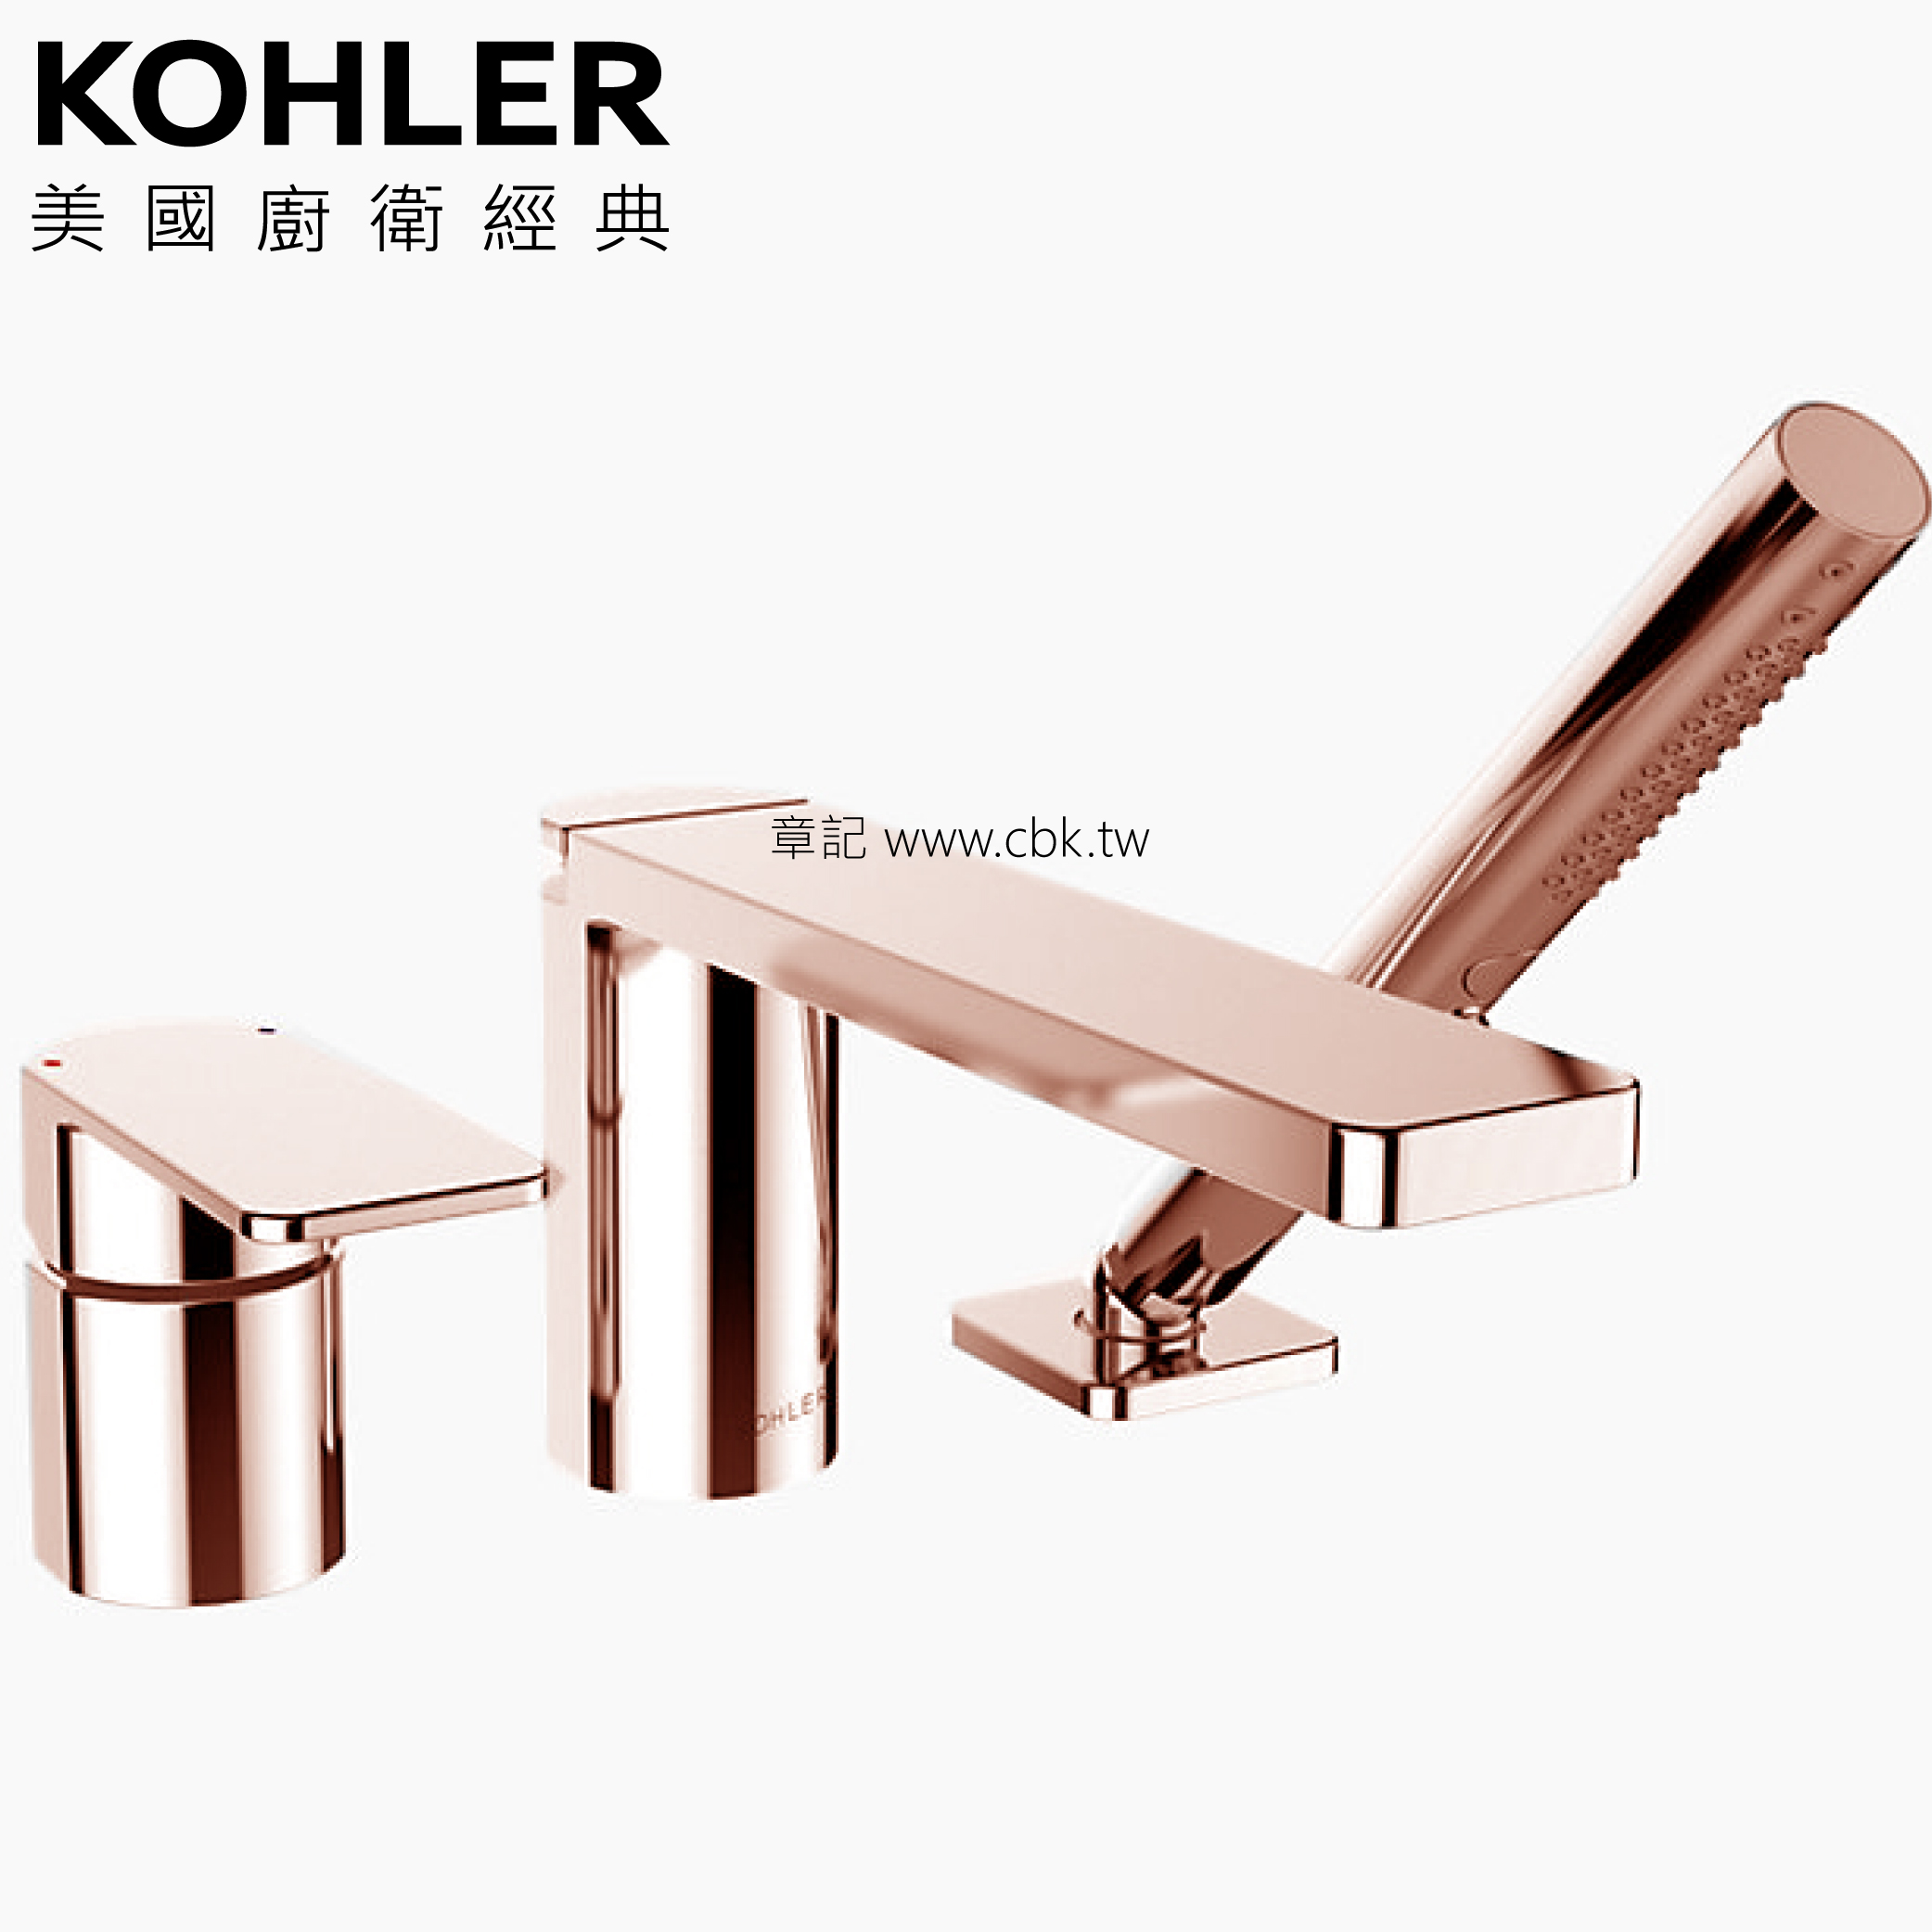 KOHLER Parallel 缸上型龍頭(玫瑰金) K-23488T-4-RGD  |浴缸|浴缸龍頭